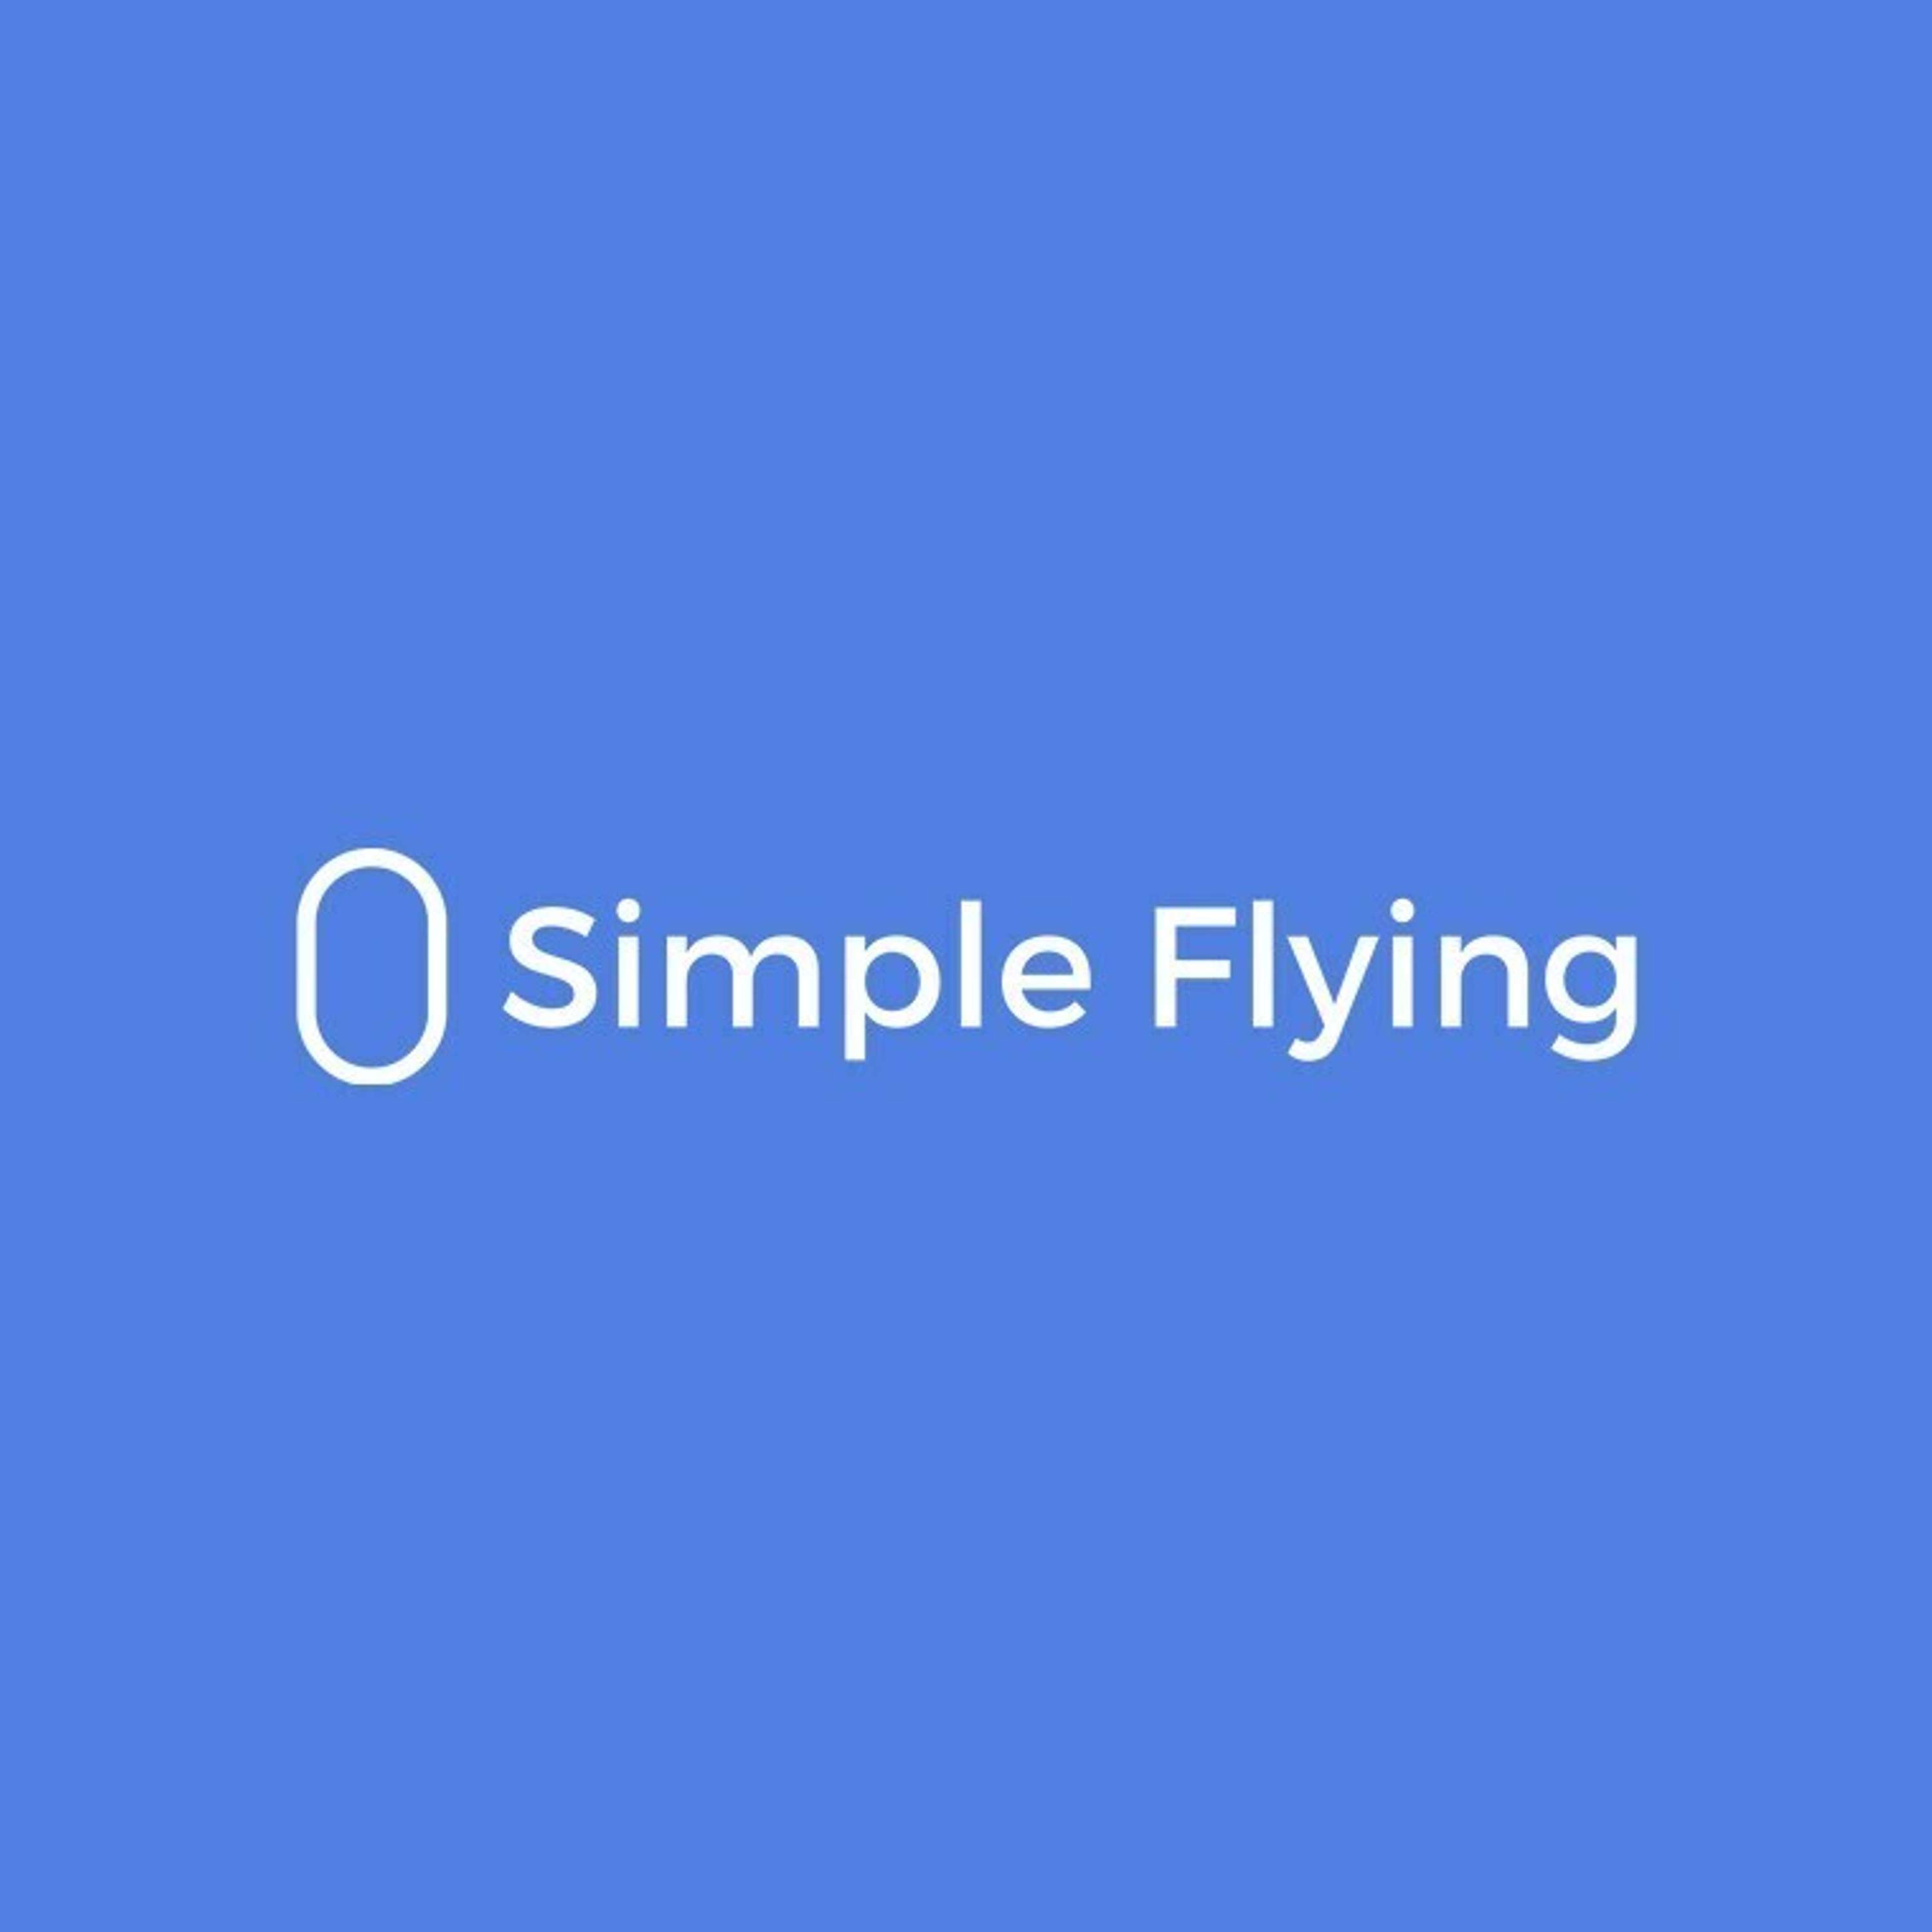 Simple Flying - Arran Rice & Joanna Bailey